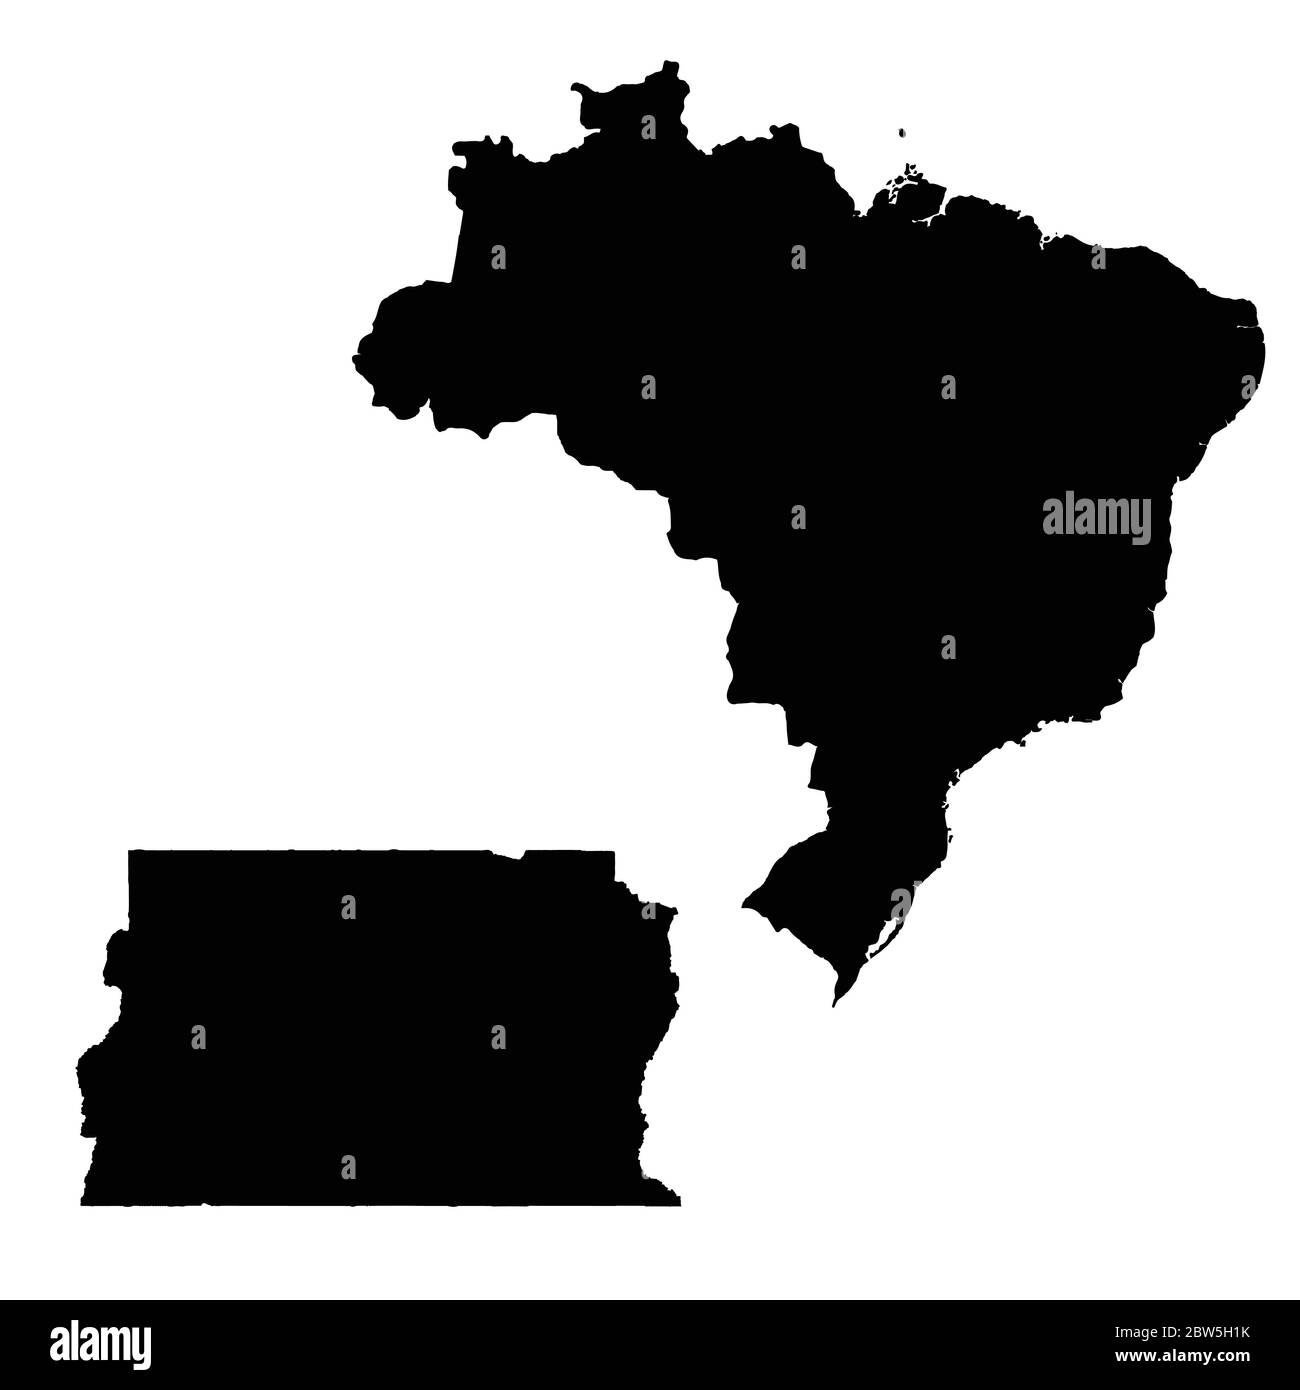 Vektorkarte Brasilien und Brasilia. Land und Hauptstadt. Isolierte Vektorgrafik. Schwarz auf weißem Hintergrund. EPS 10-Abbildung. Stock Vektor